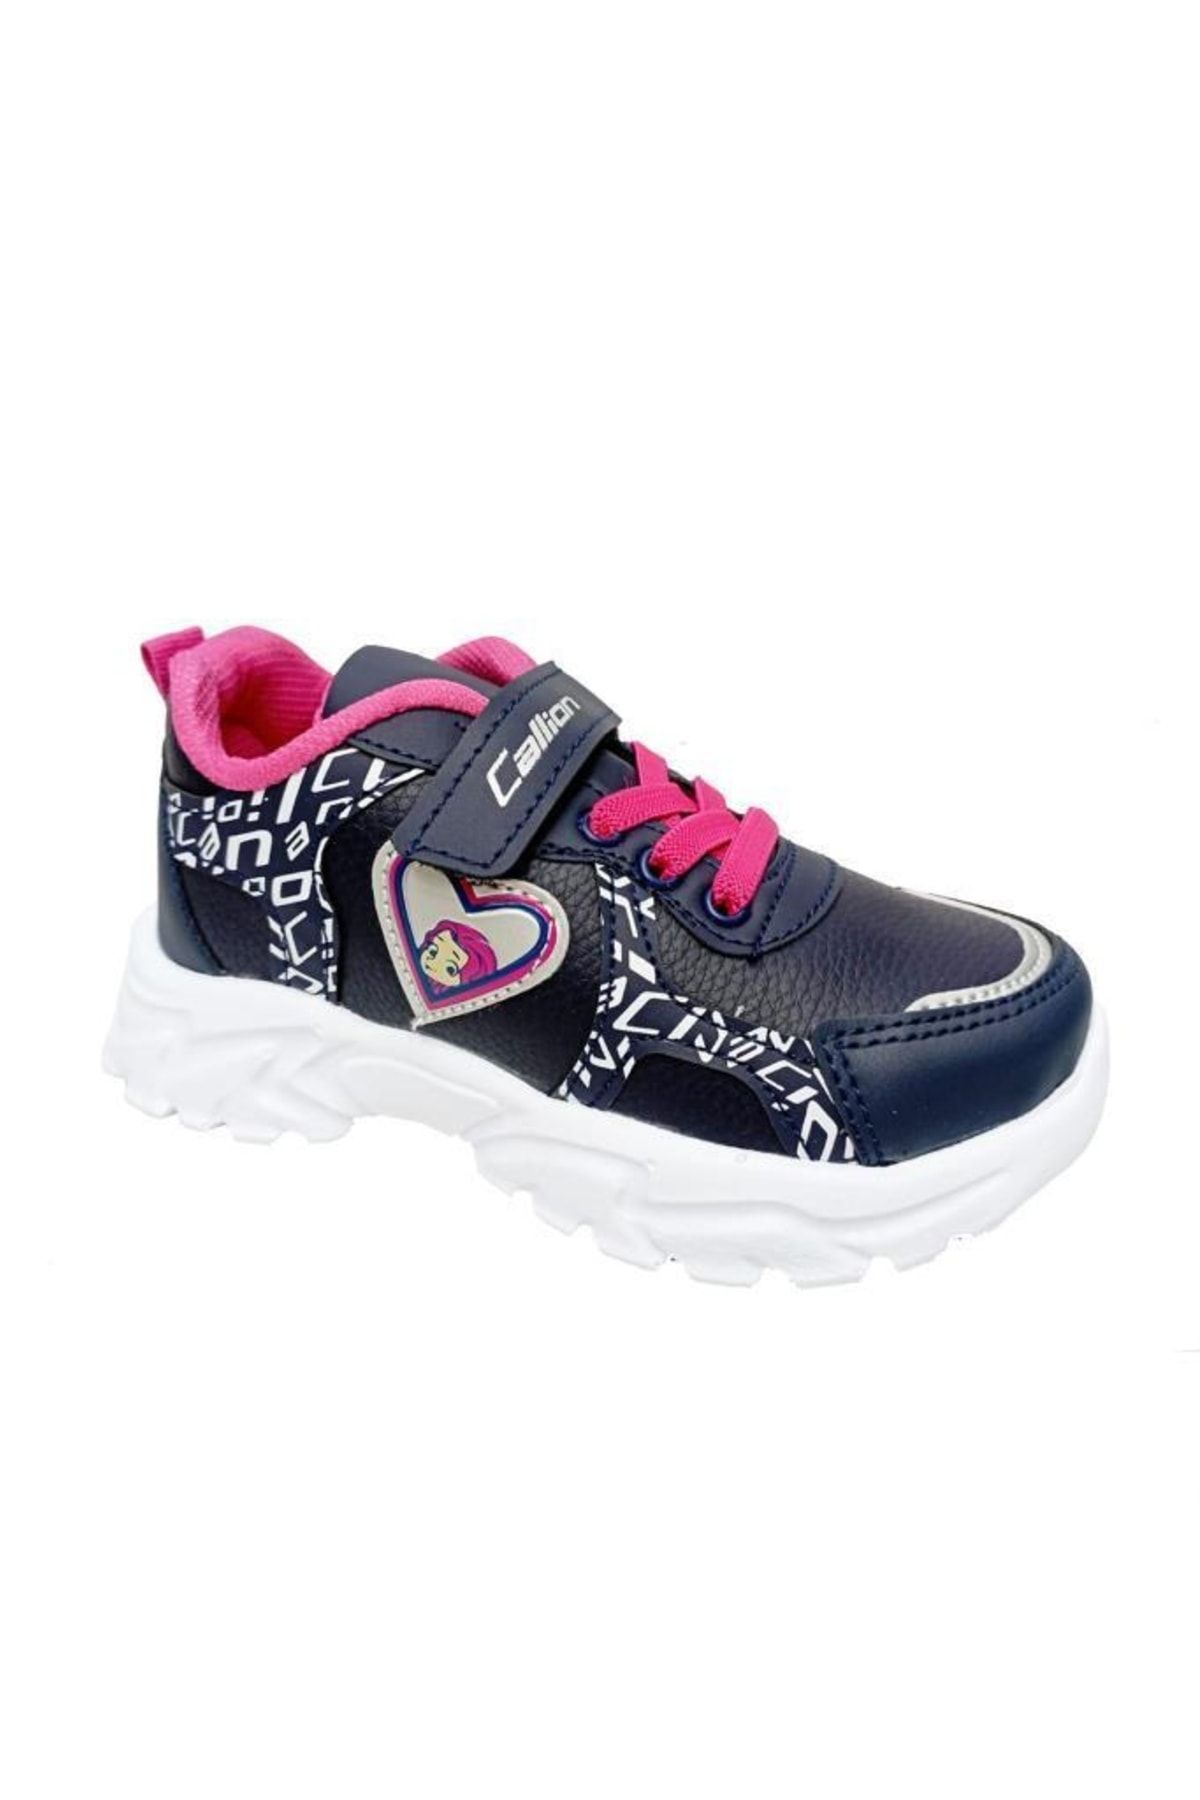 Callion 047 Deri Kız Çocuk Sneakers Ayakkabı 26-30 Lacivert Fuşya